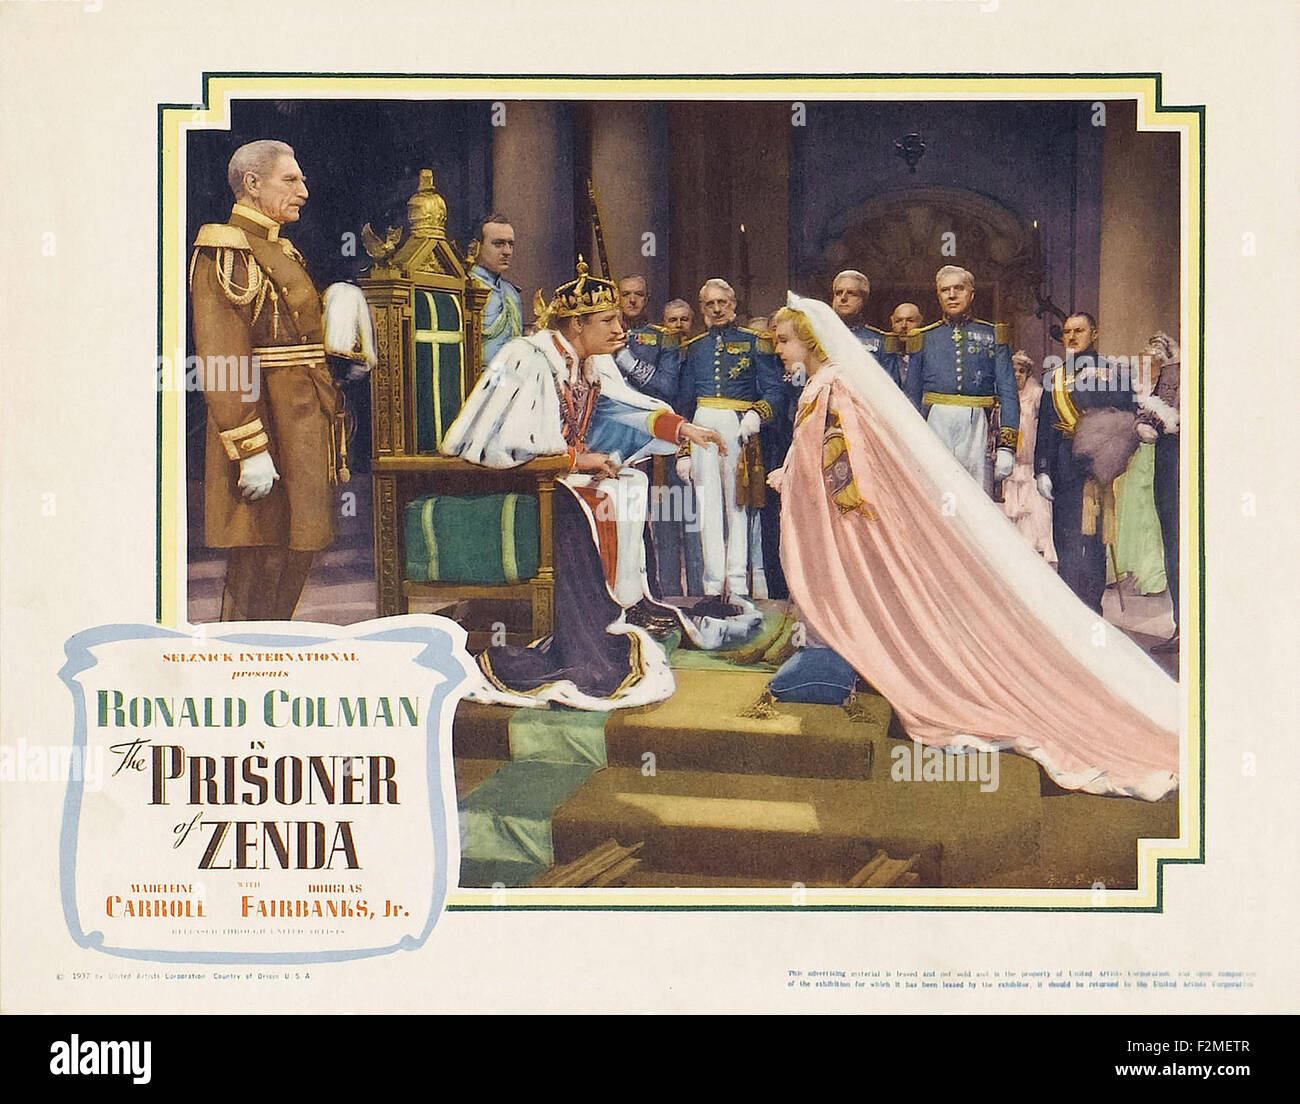 Prisionero de Zenda, La (1937) - póster de película Foto de stock